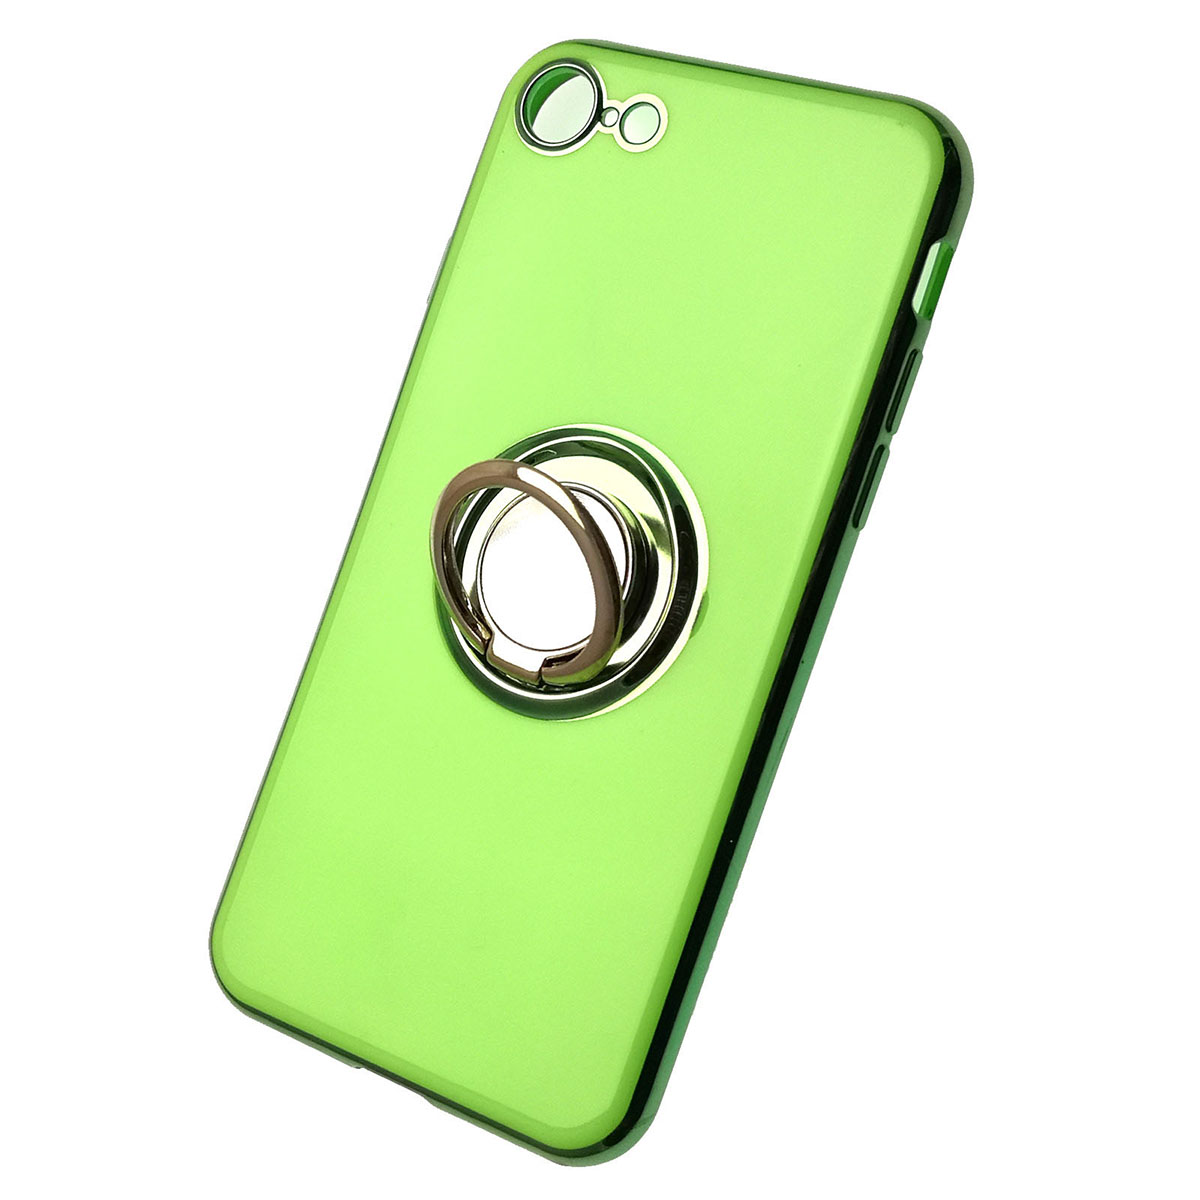 Чехол накладка для APPLE iPhone 7, 8, силикон, глянец, с лого, кольцо держатель, цвет зеленый.